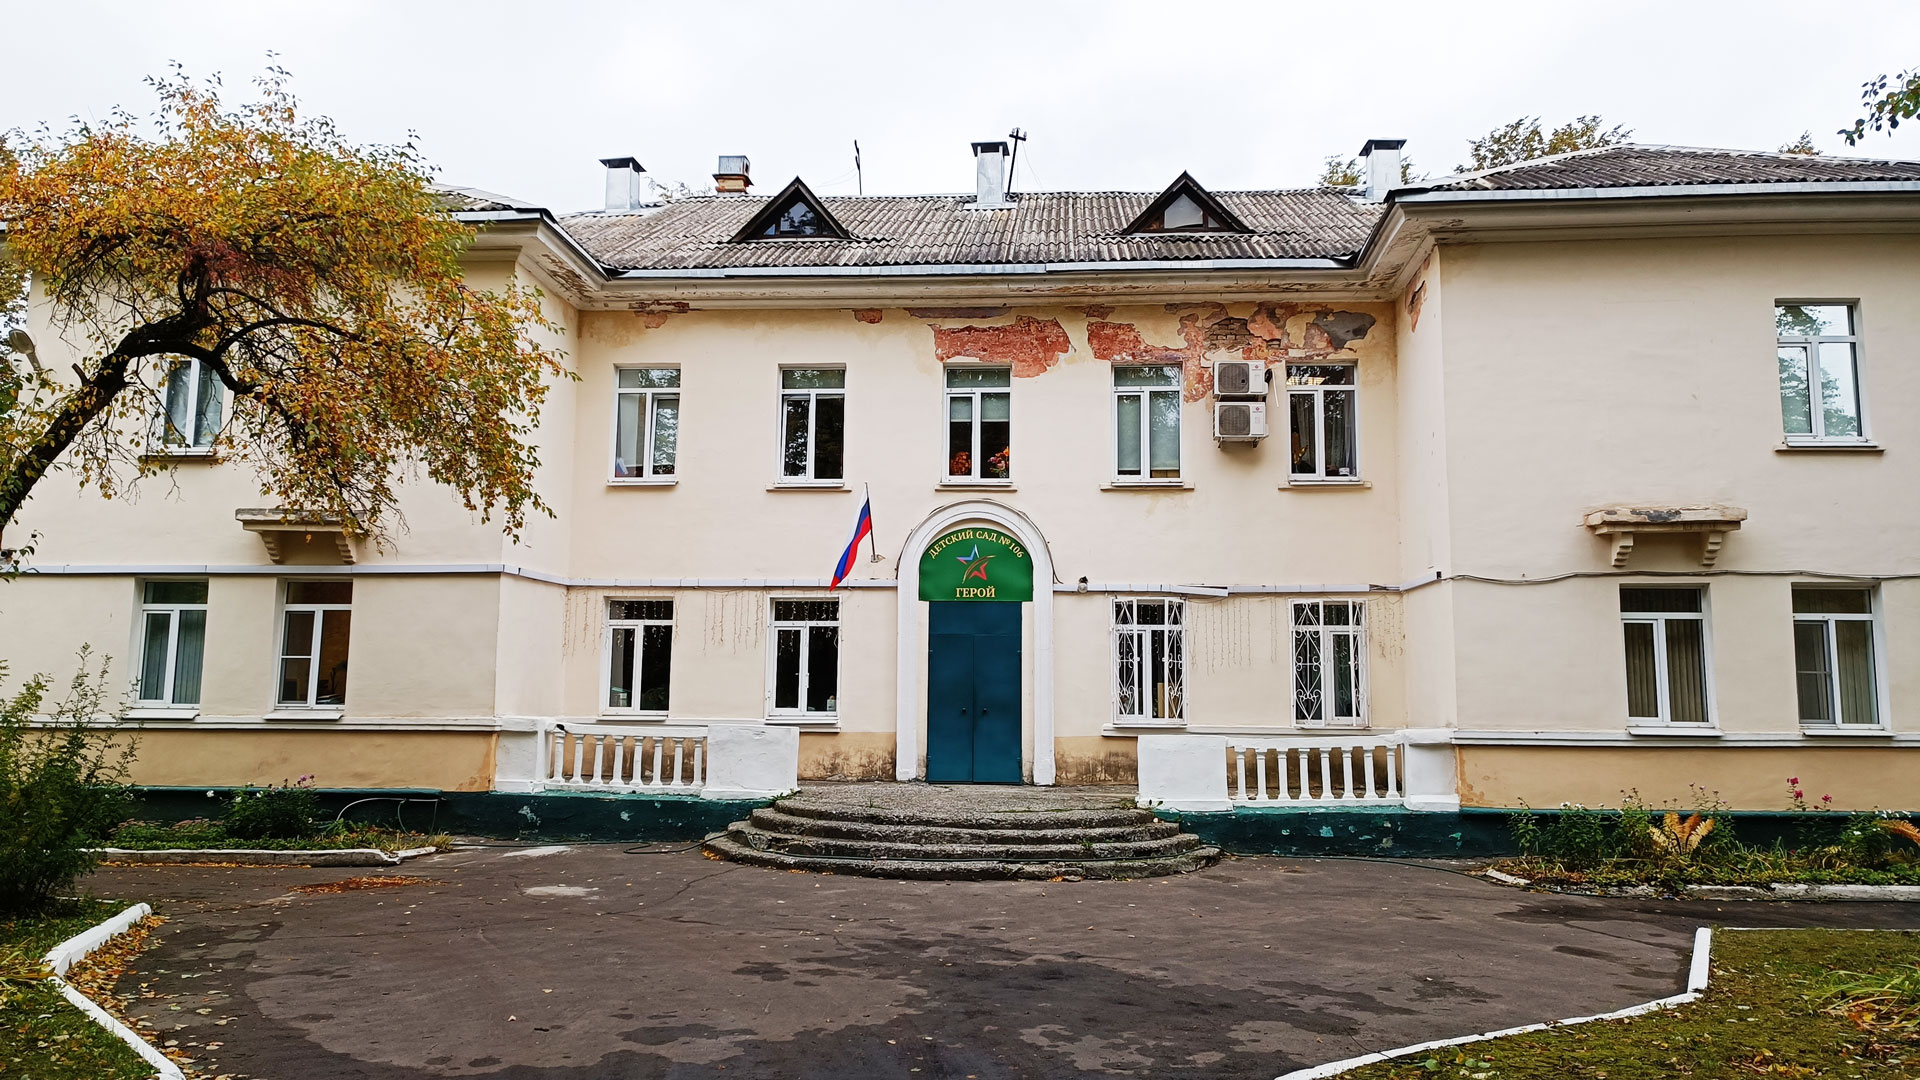 Детский сад 106 Ярославль: общий вид здания.